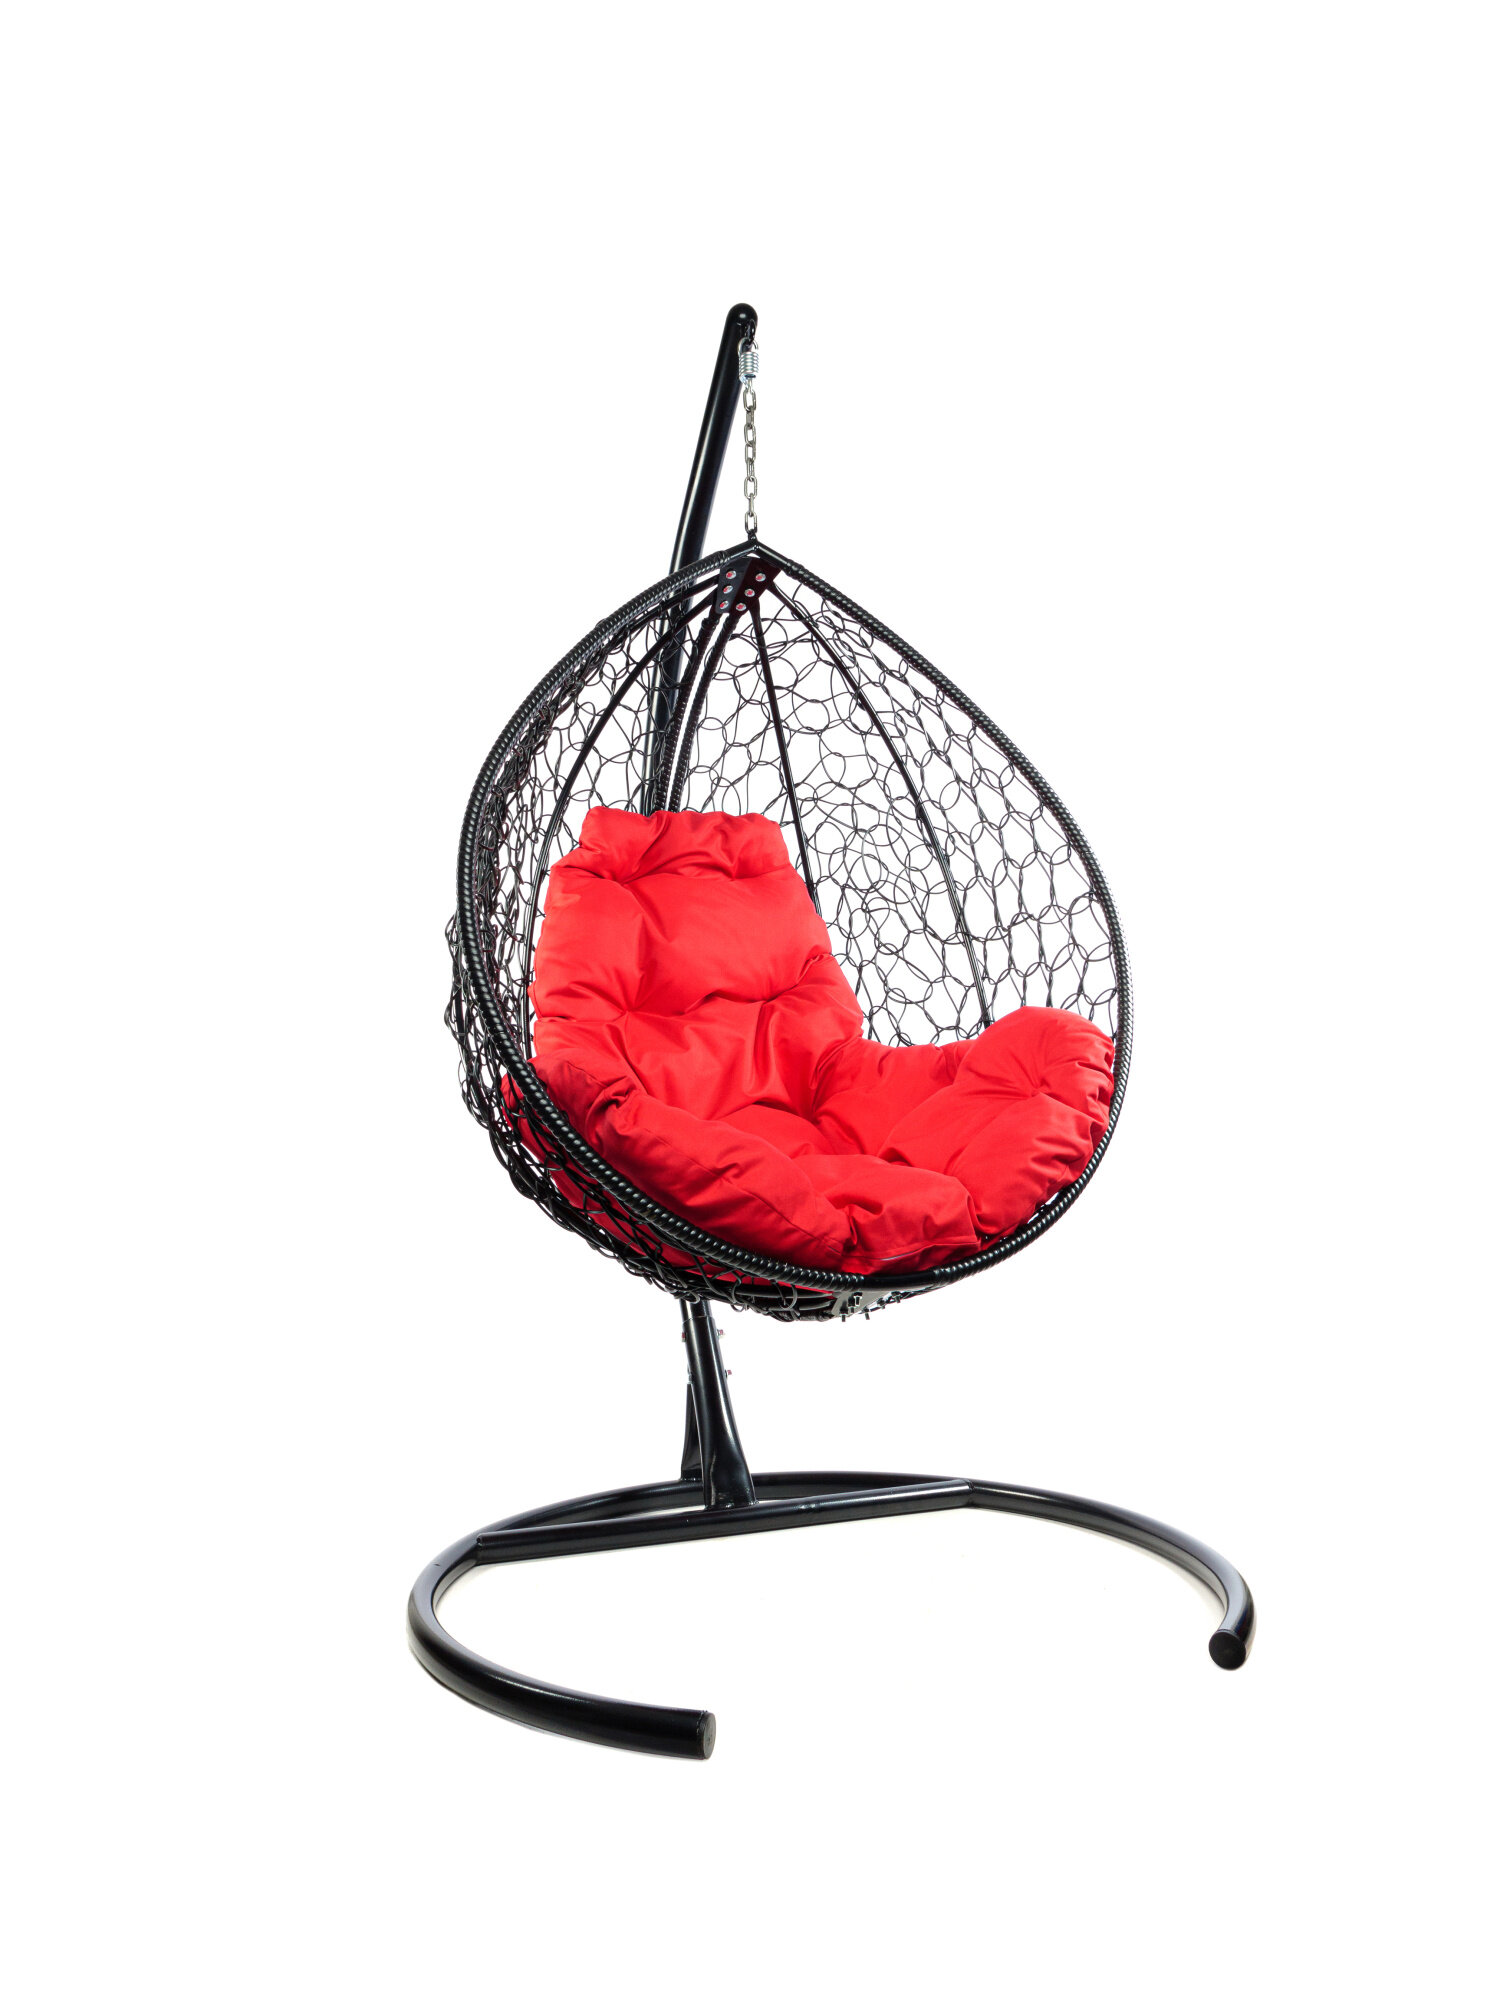 Подвесное кресло M-group капля складной, с ротангом чёрное красная подушка